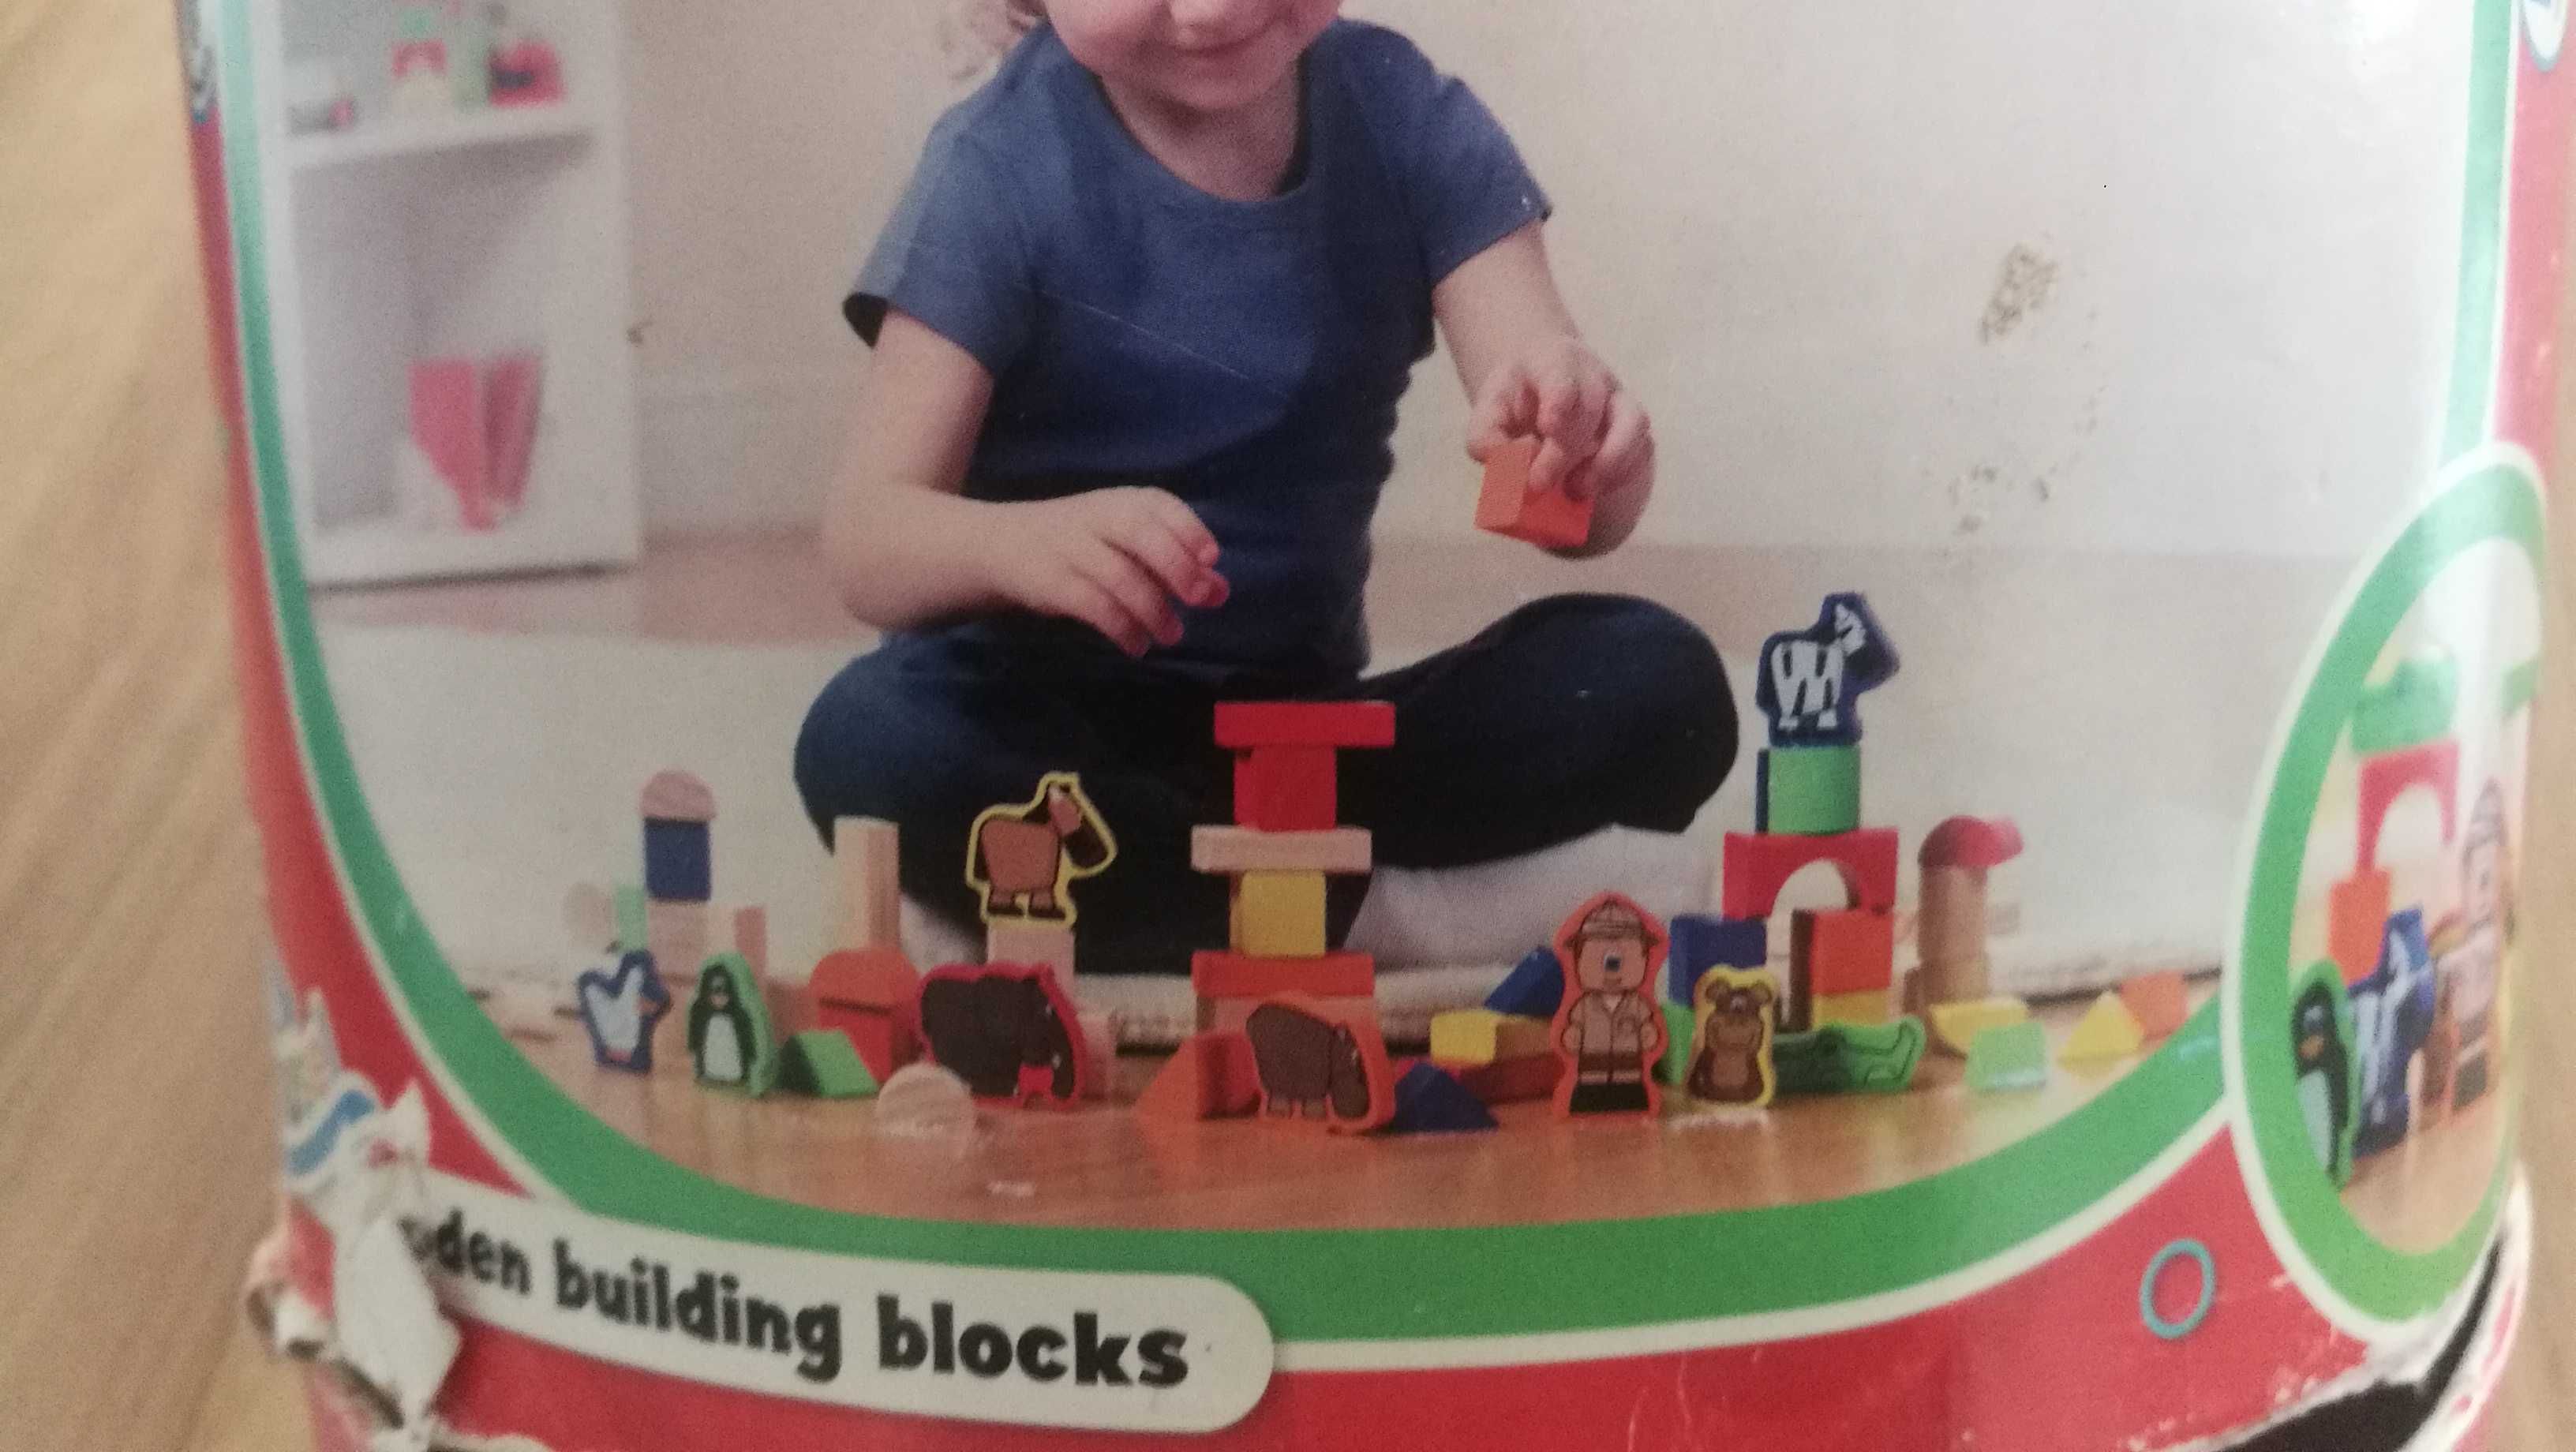 Pudełko drewnianych klocków ze zwierzątkami Carousel building blocks